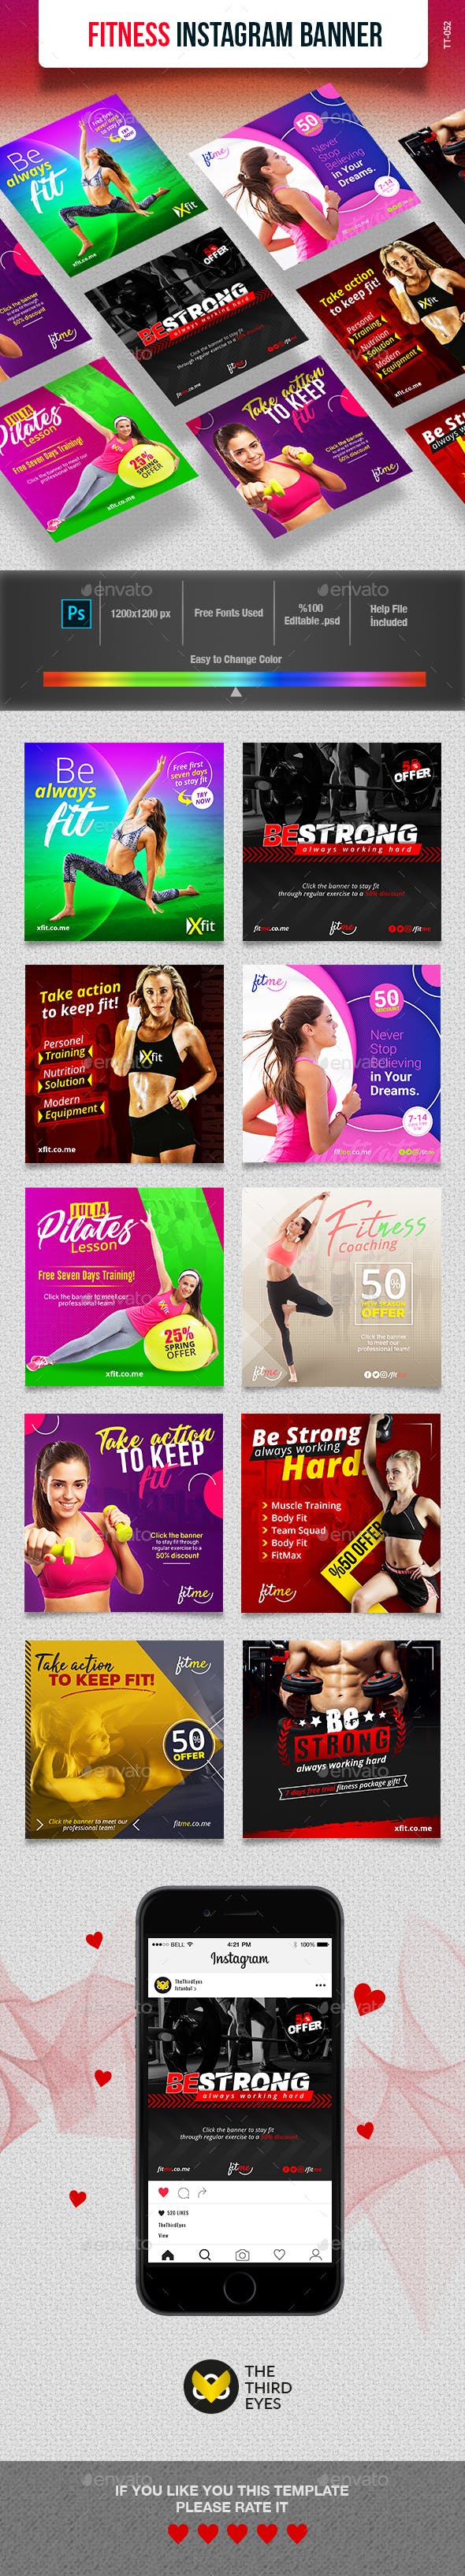 健身主题Instagram社交媒体Banner广告营销海报模板第一素材精选插图